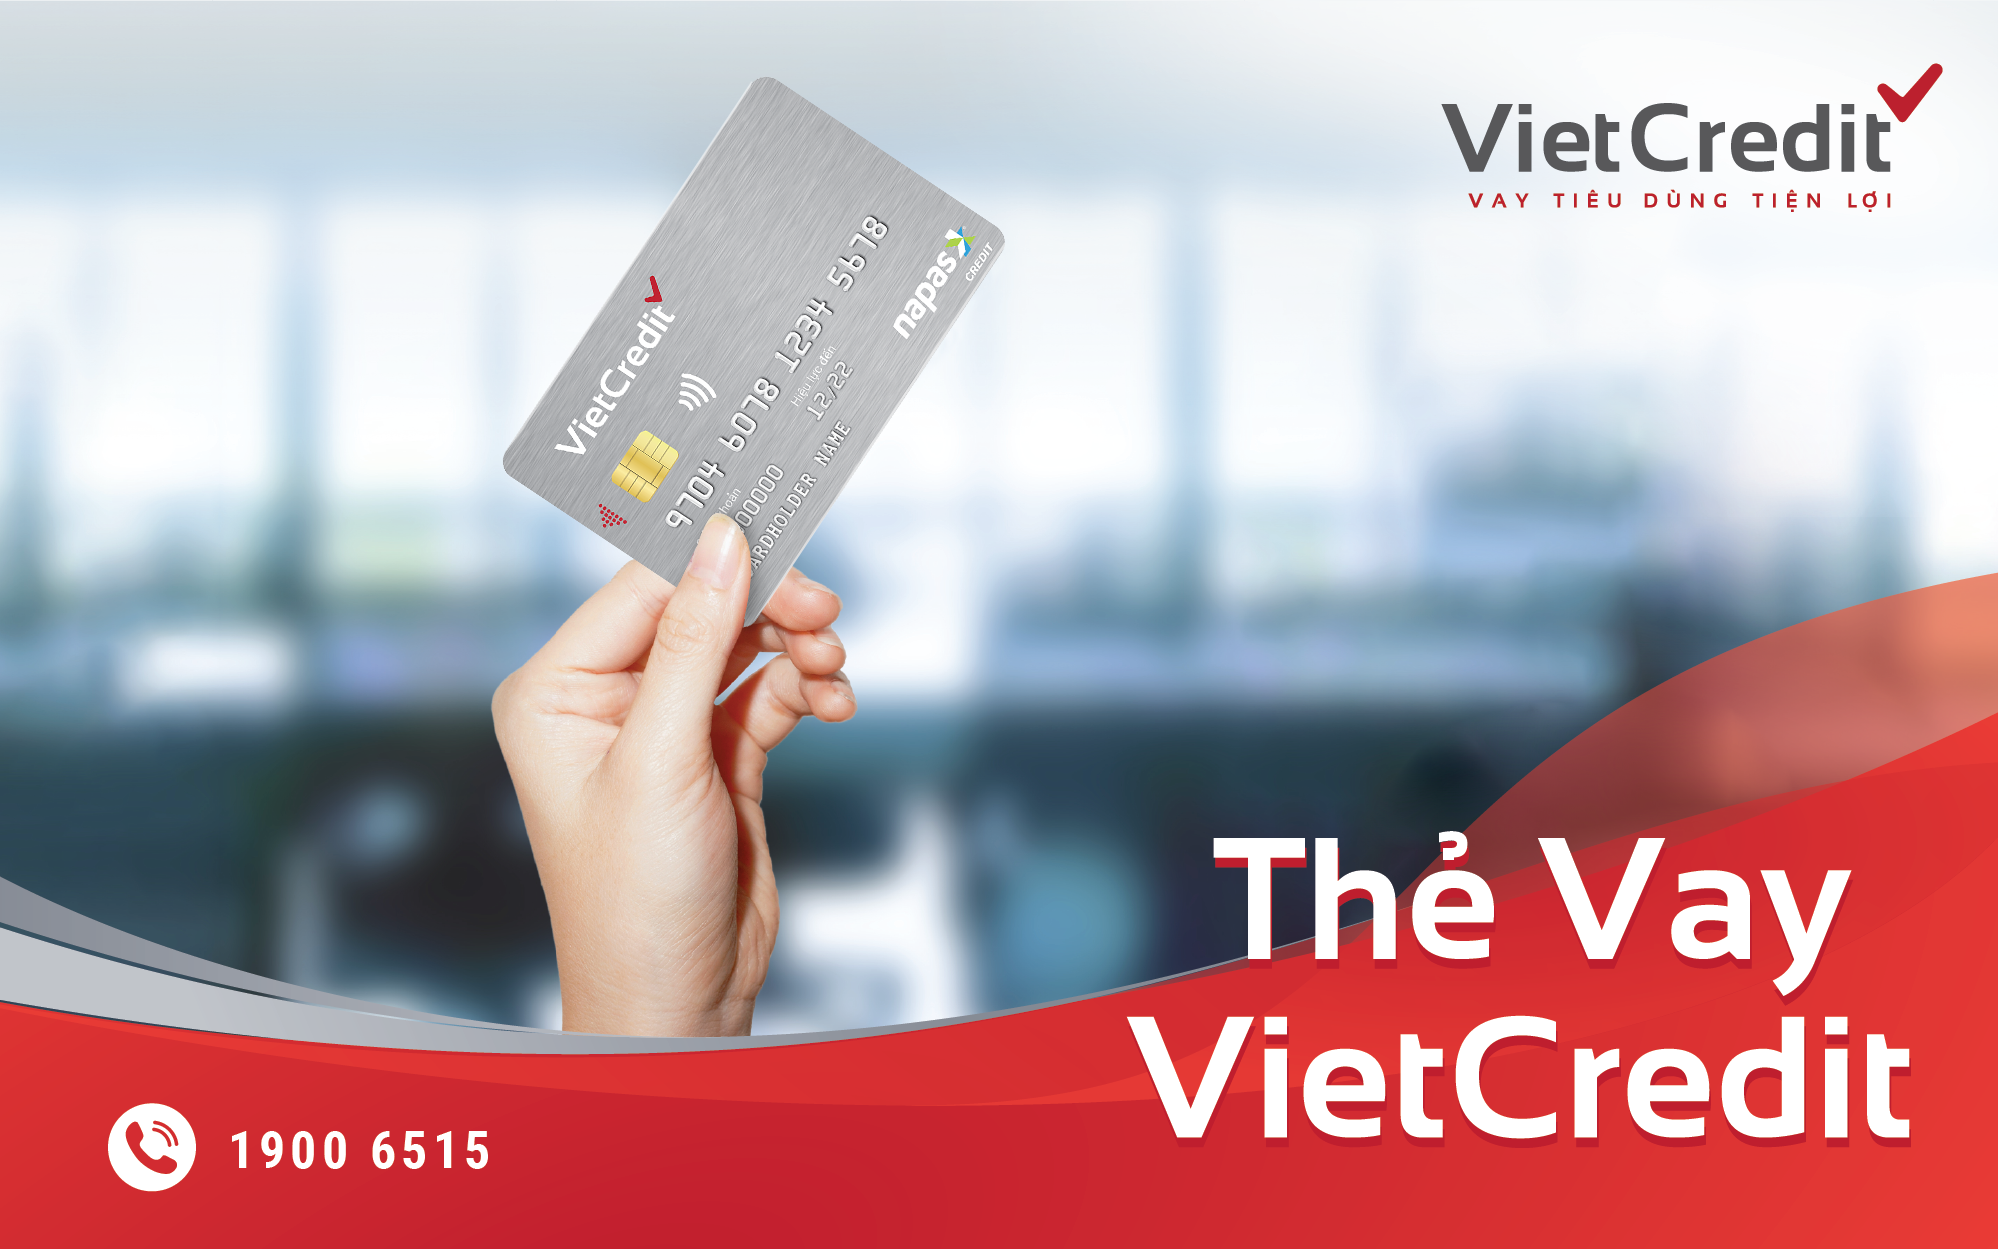 Lý do thẻ tín dụng nội địa VietCredit được giới văn phòng ưa chuộng